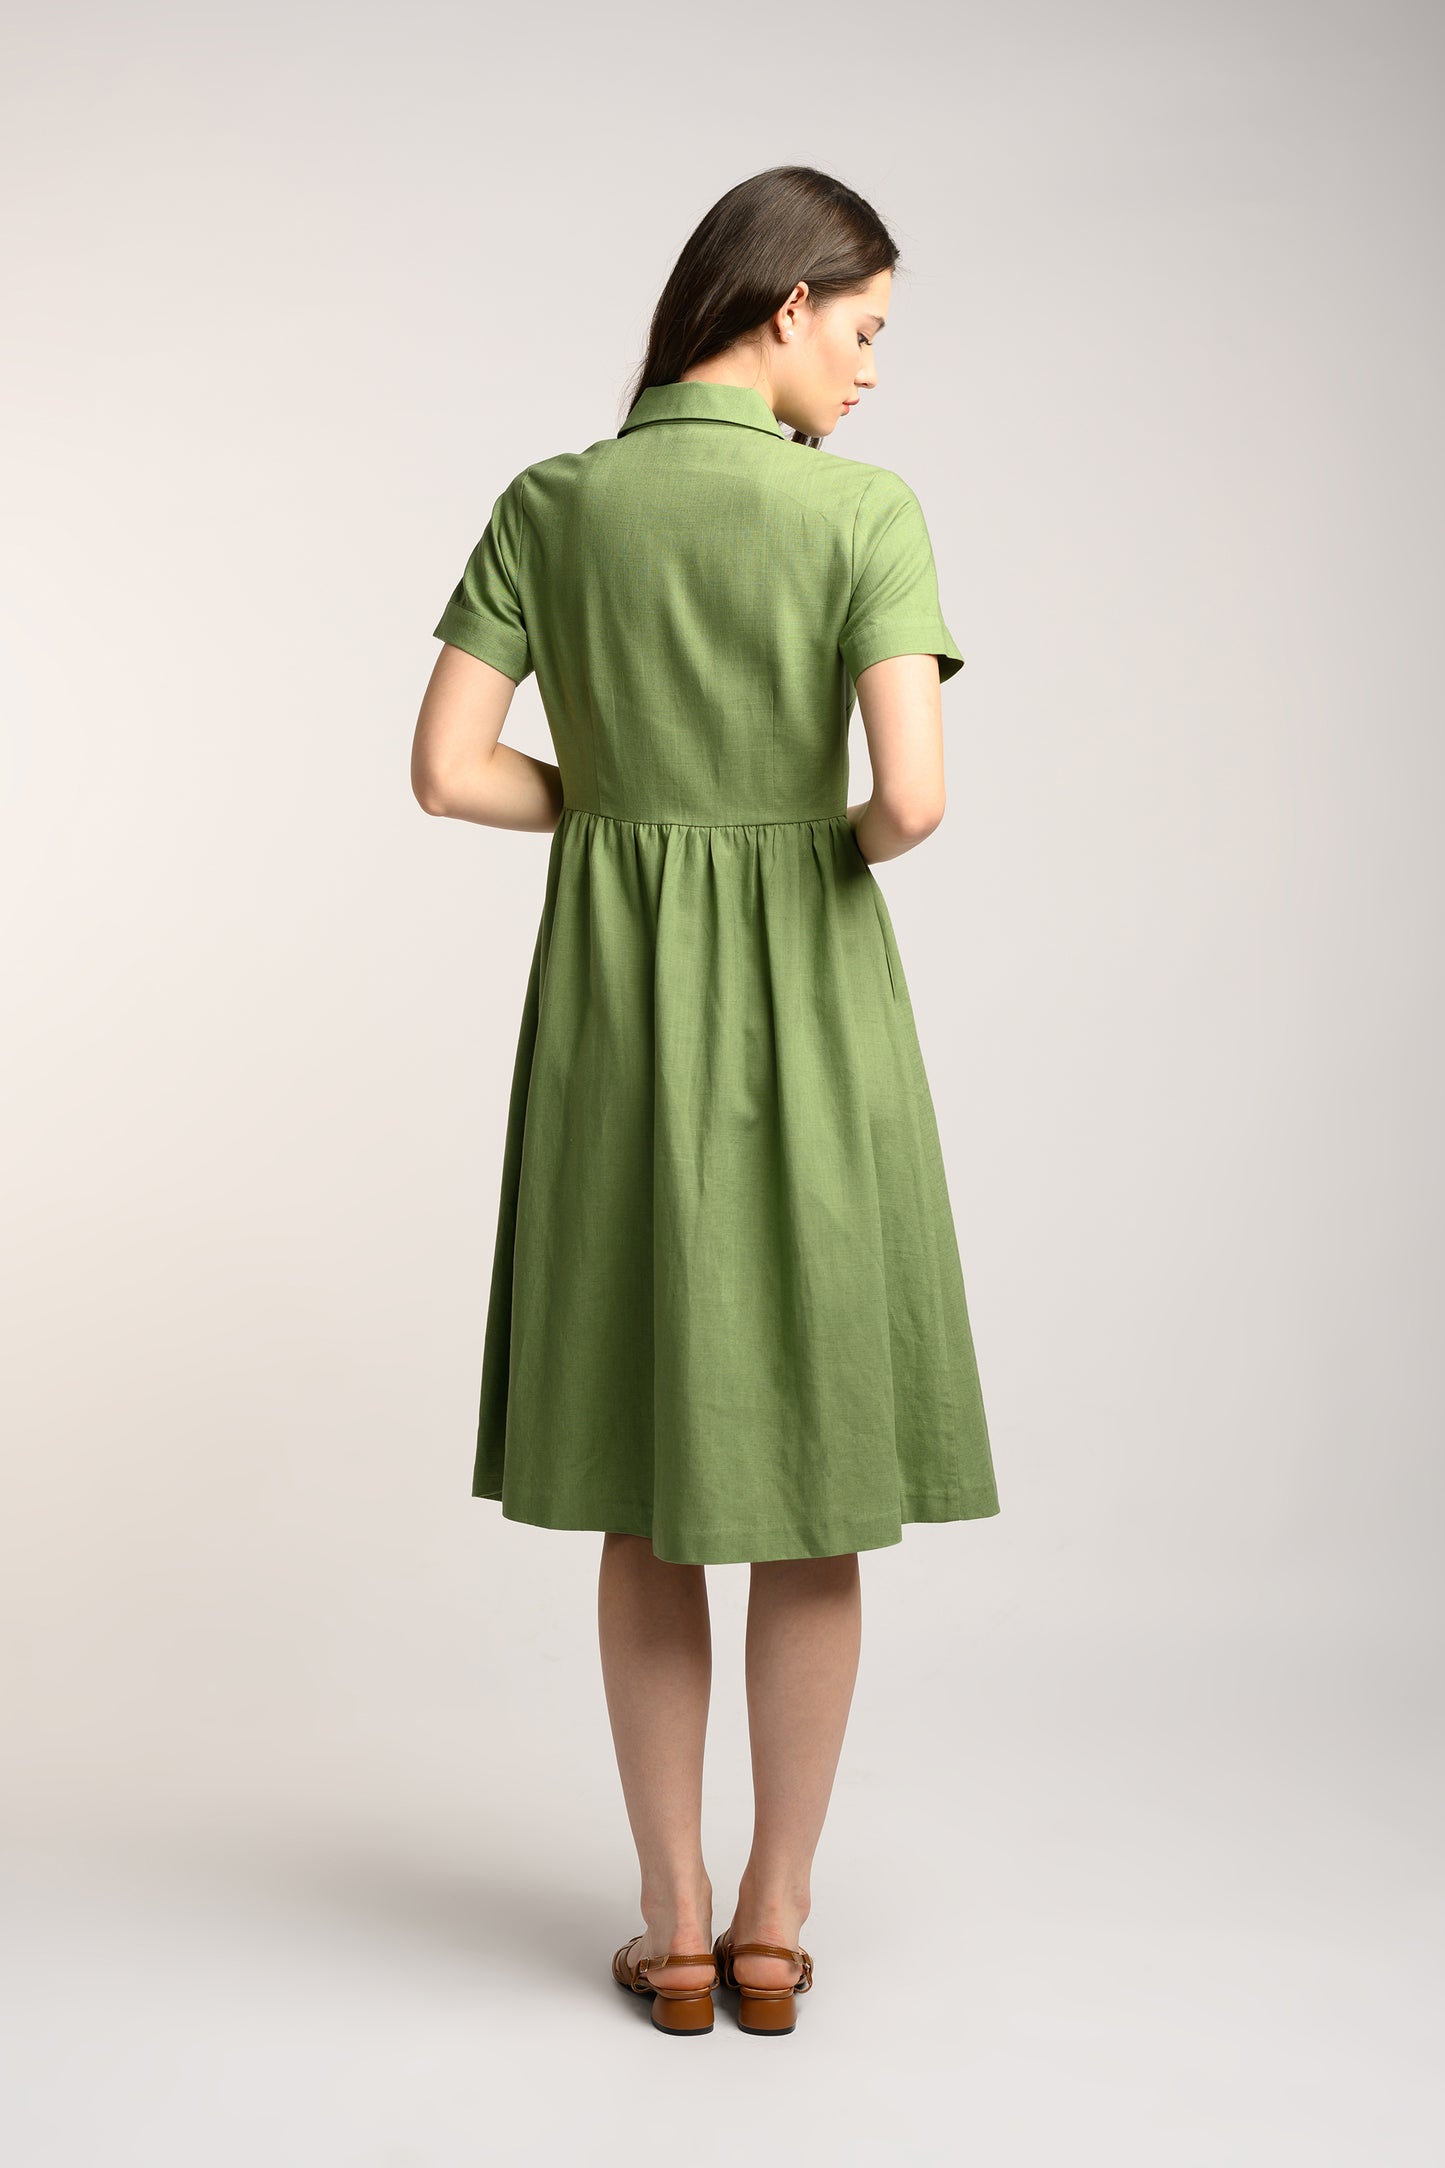 Collared Linen Dress - Fern Green